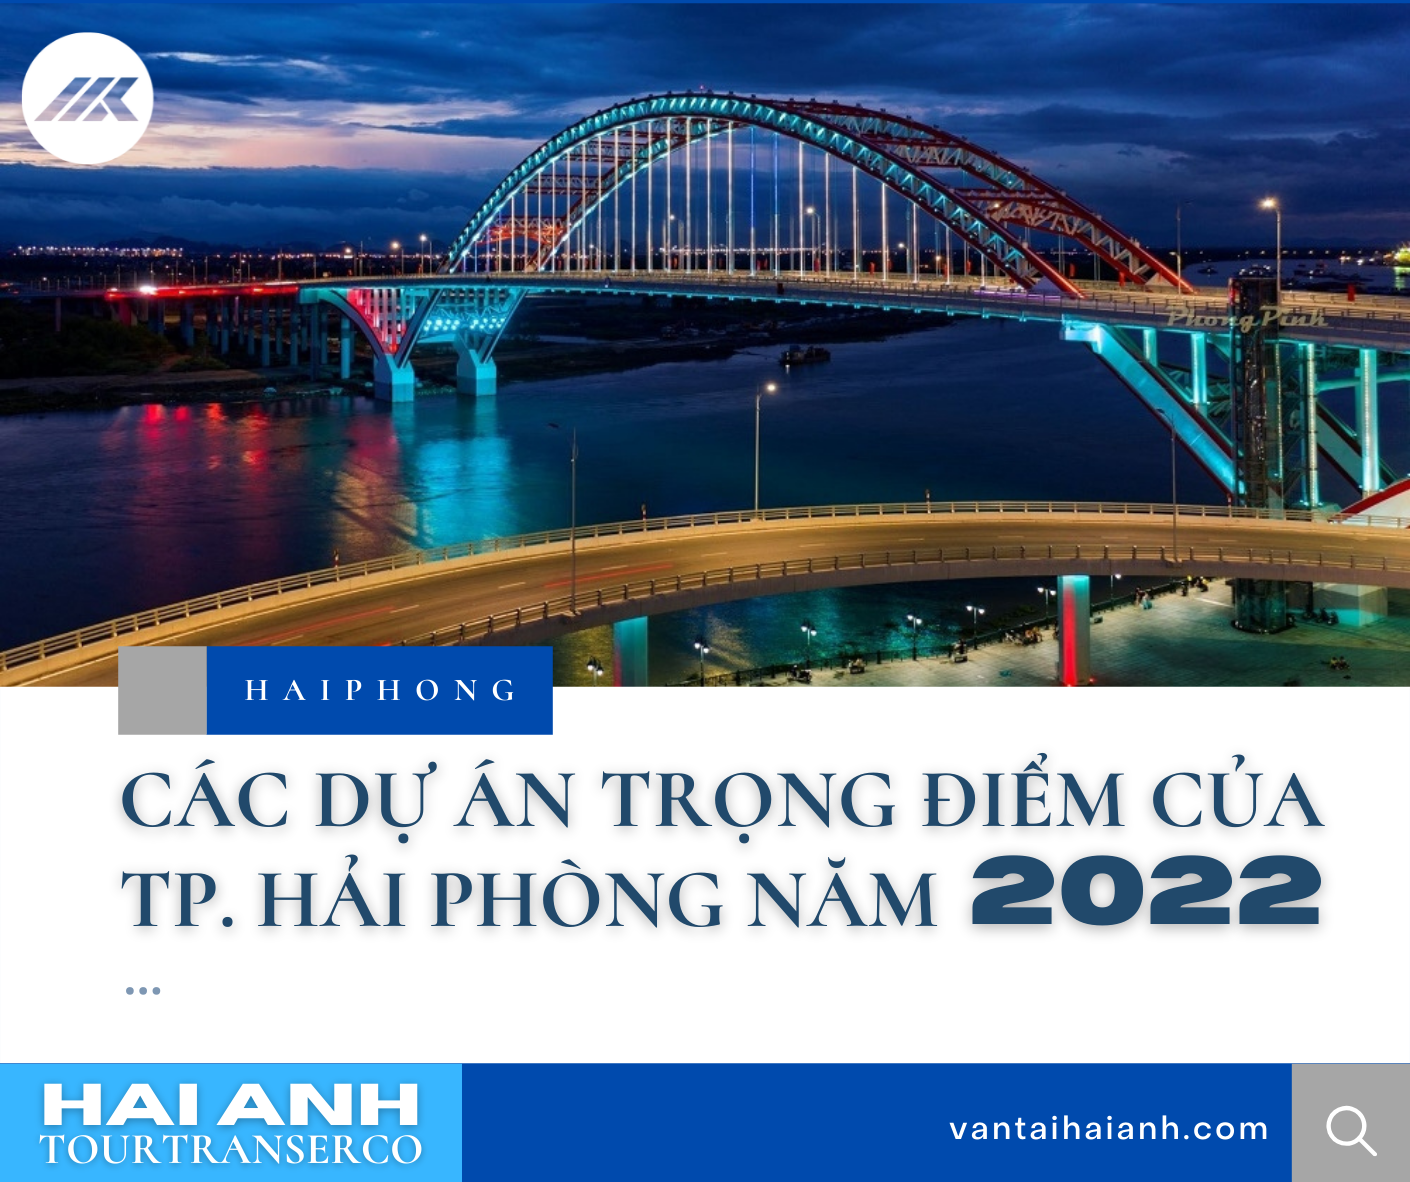 CÁC DỰ ÁN TRỌNG ĐIỂM CỦA TP. HẢI PHÒNG NĂM 2022